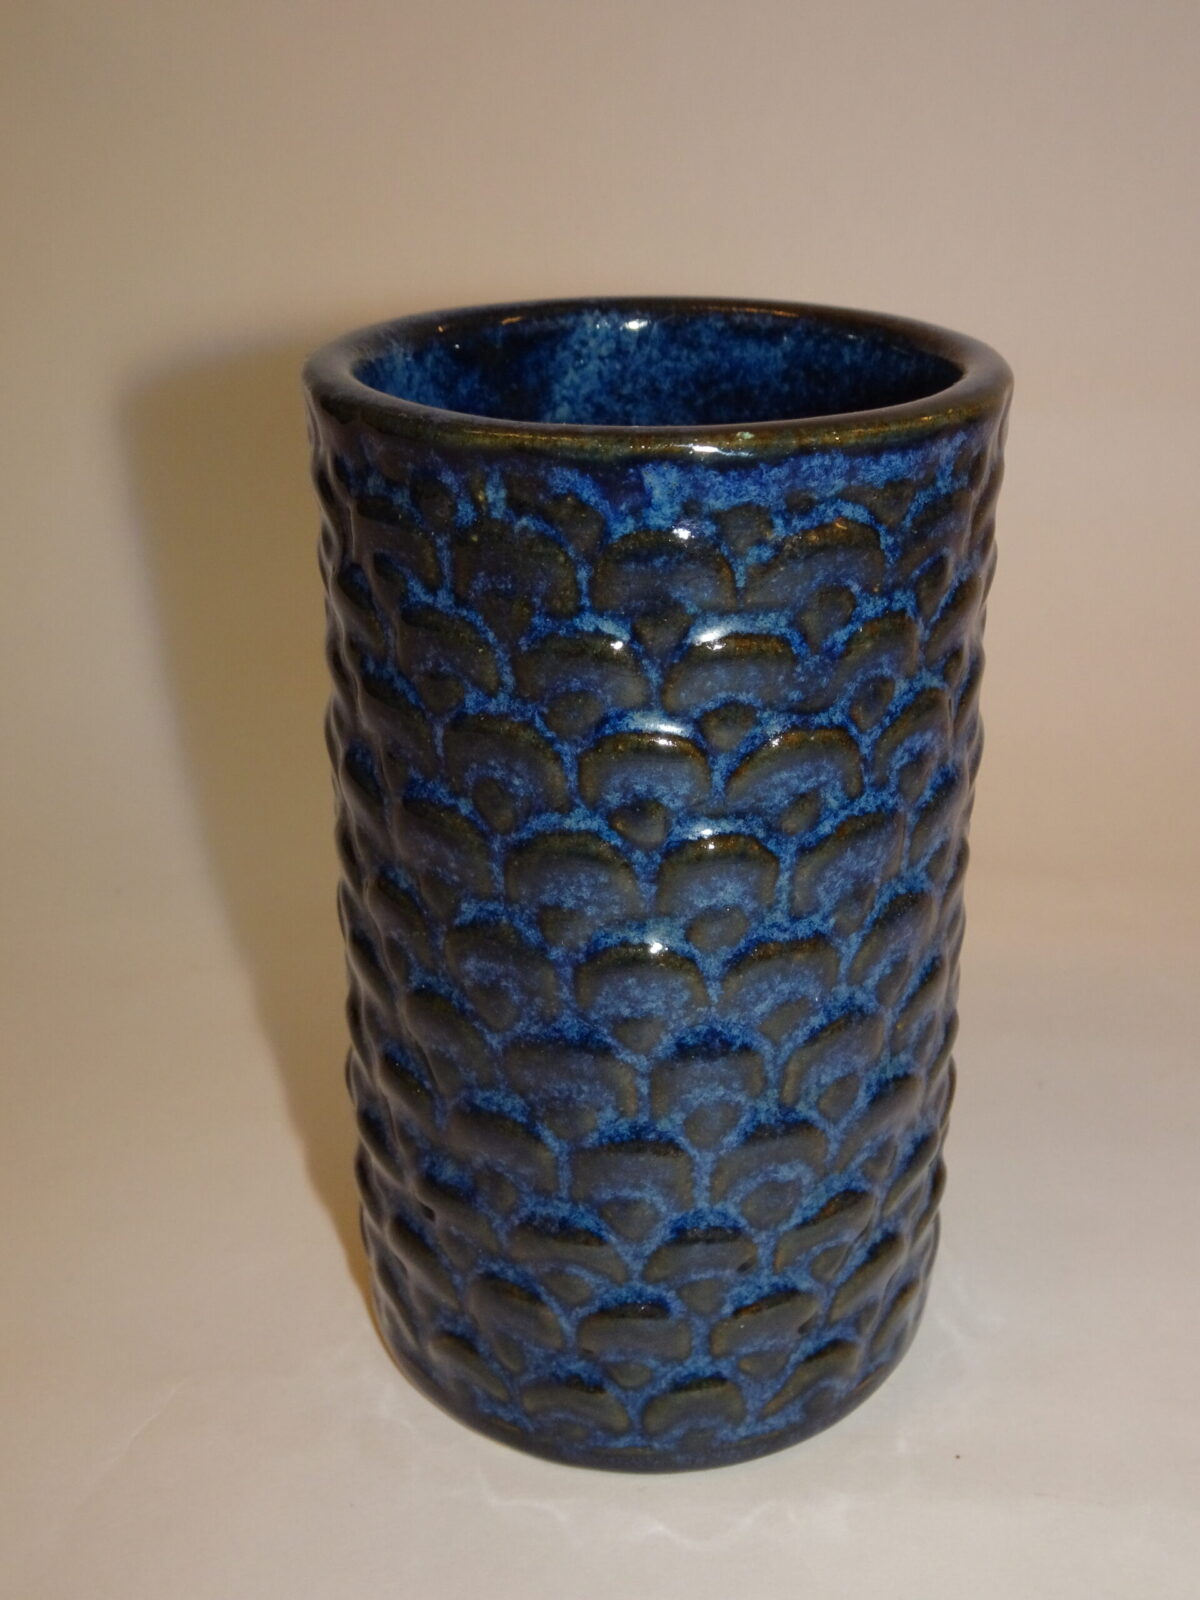 Hovedgade embargo bluse Keramik vase h: 13 cm, L. Hjorth, Bornholm -